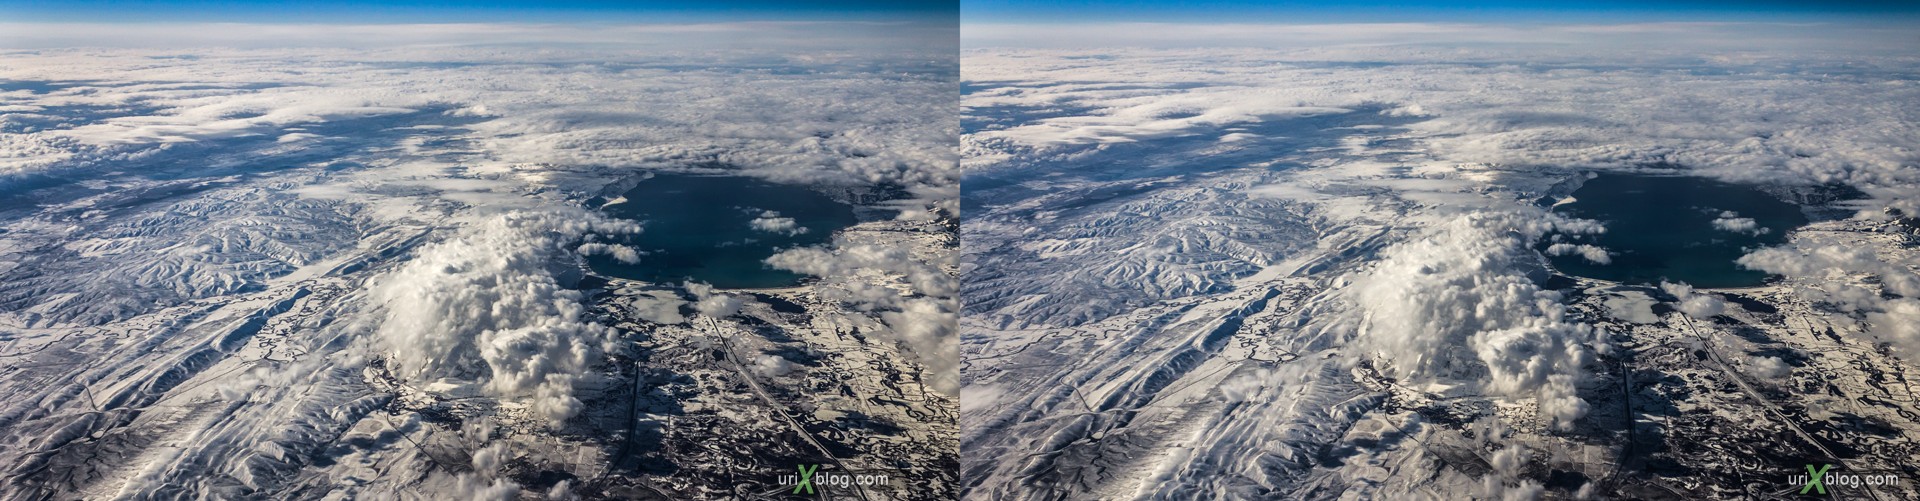 2013, штат Вайоминг, Скалистые горы, США, горы, облака, снег, панорама, самолёт, чёрно-белое, чб, 3D, перекрёстные стереопары, стерео, стереопара, стереопары